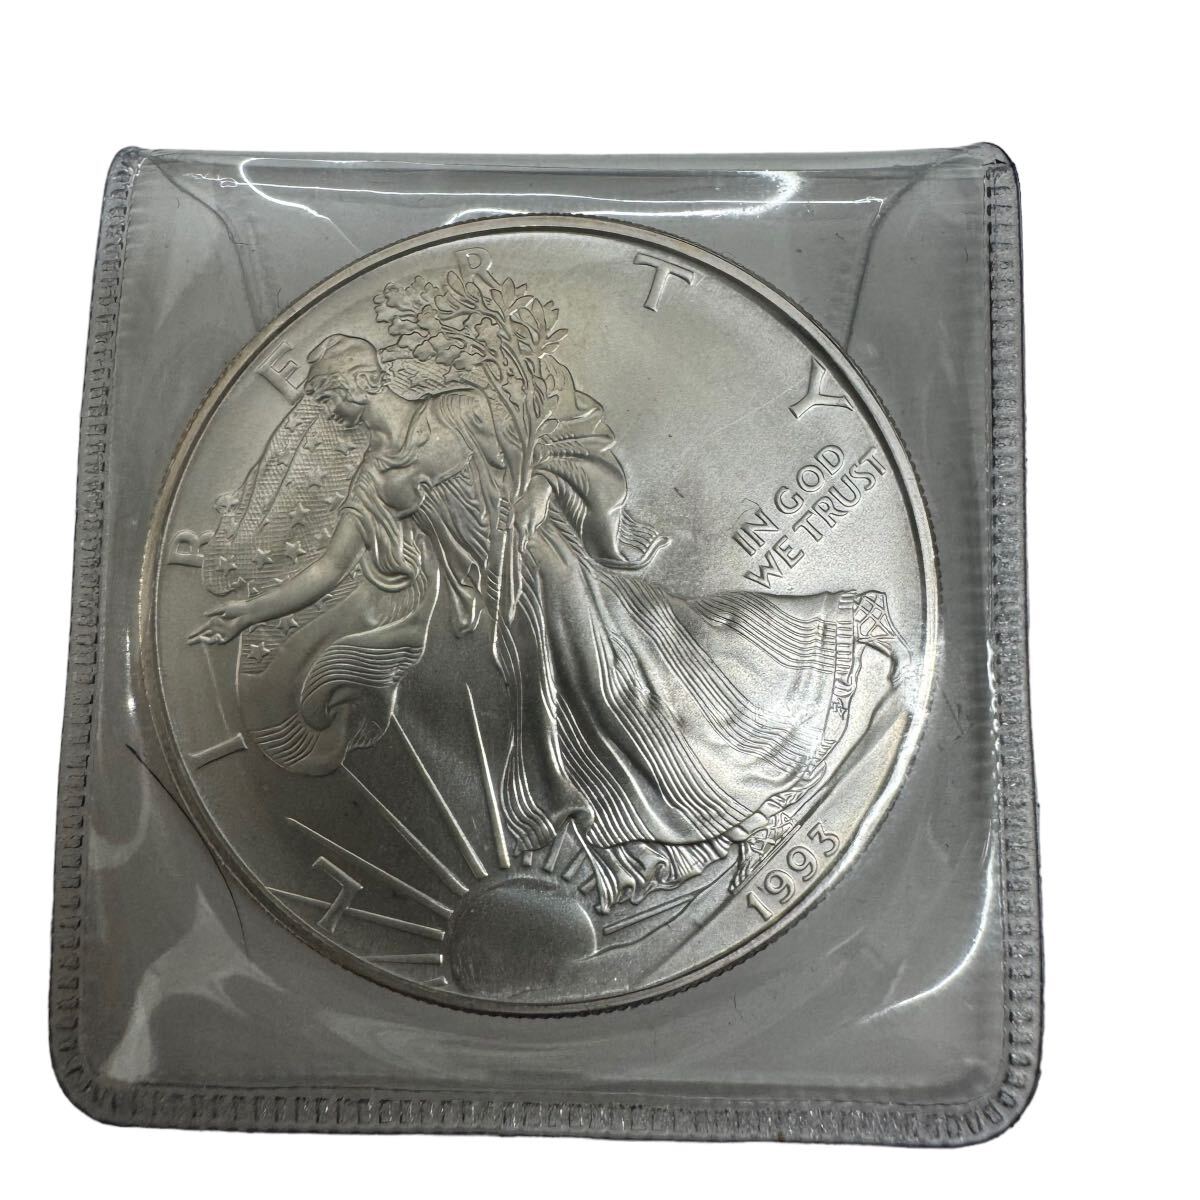 1993年 アメリカ イーグル ウォーキング リバティ 純銀 1オンス 銀貨 重量約31.2g 記念硬貨 銀貨 女神 リバティ アメリカンイーグル 10537_画像1